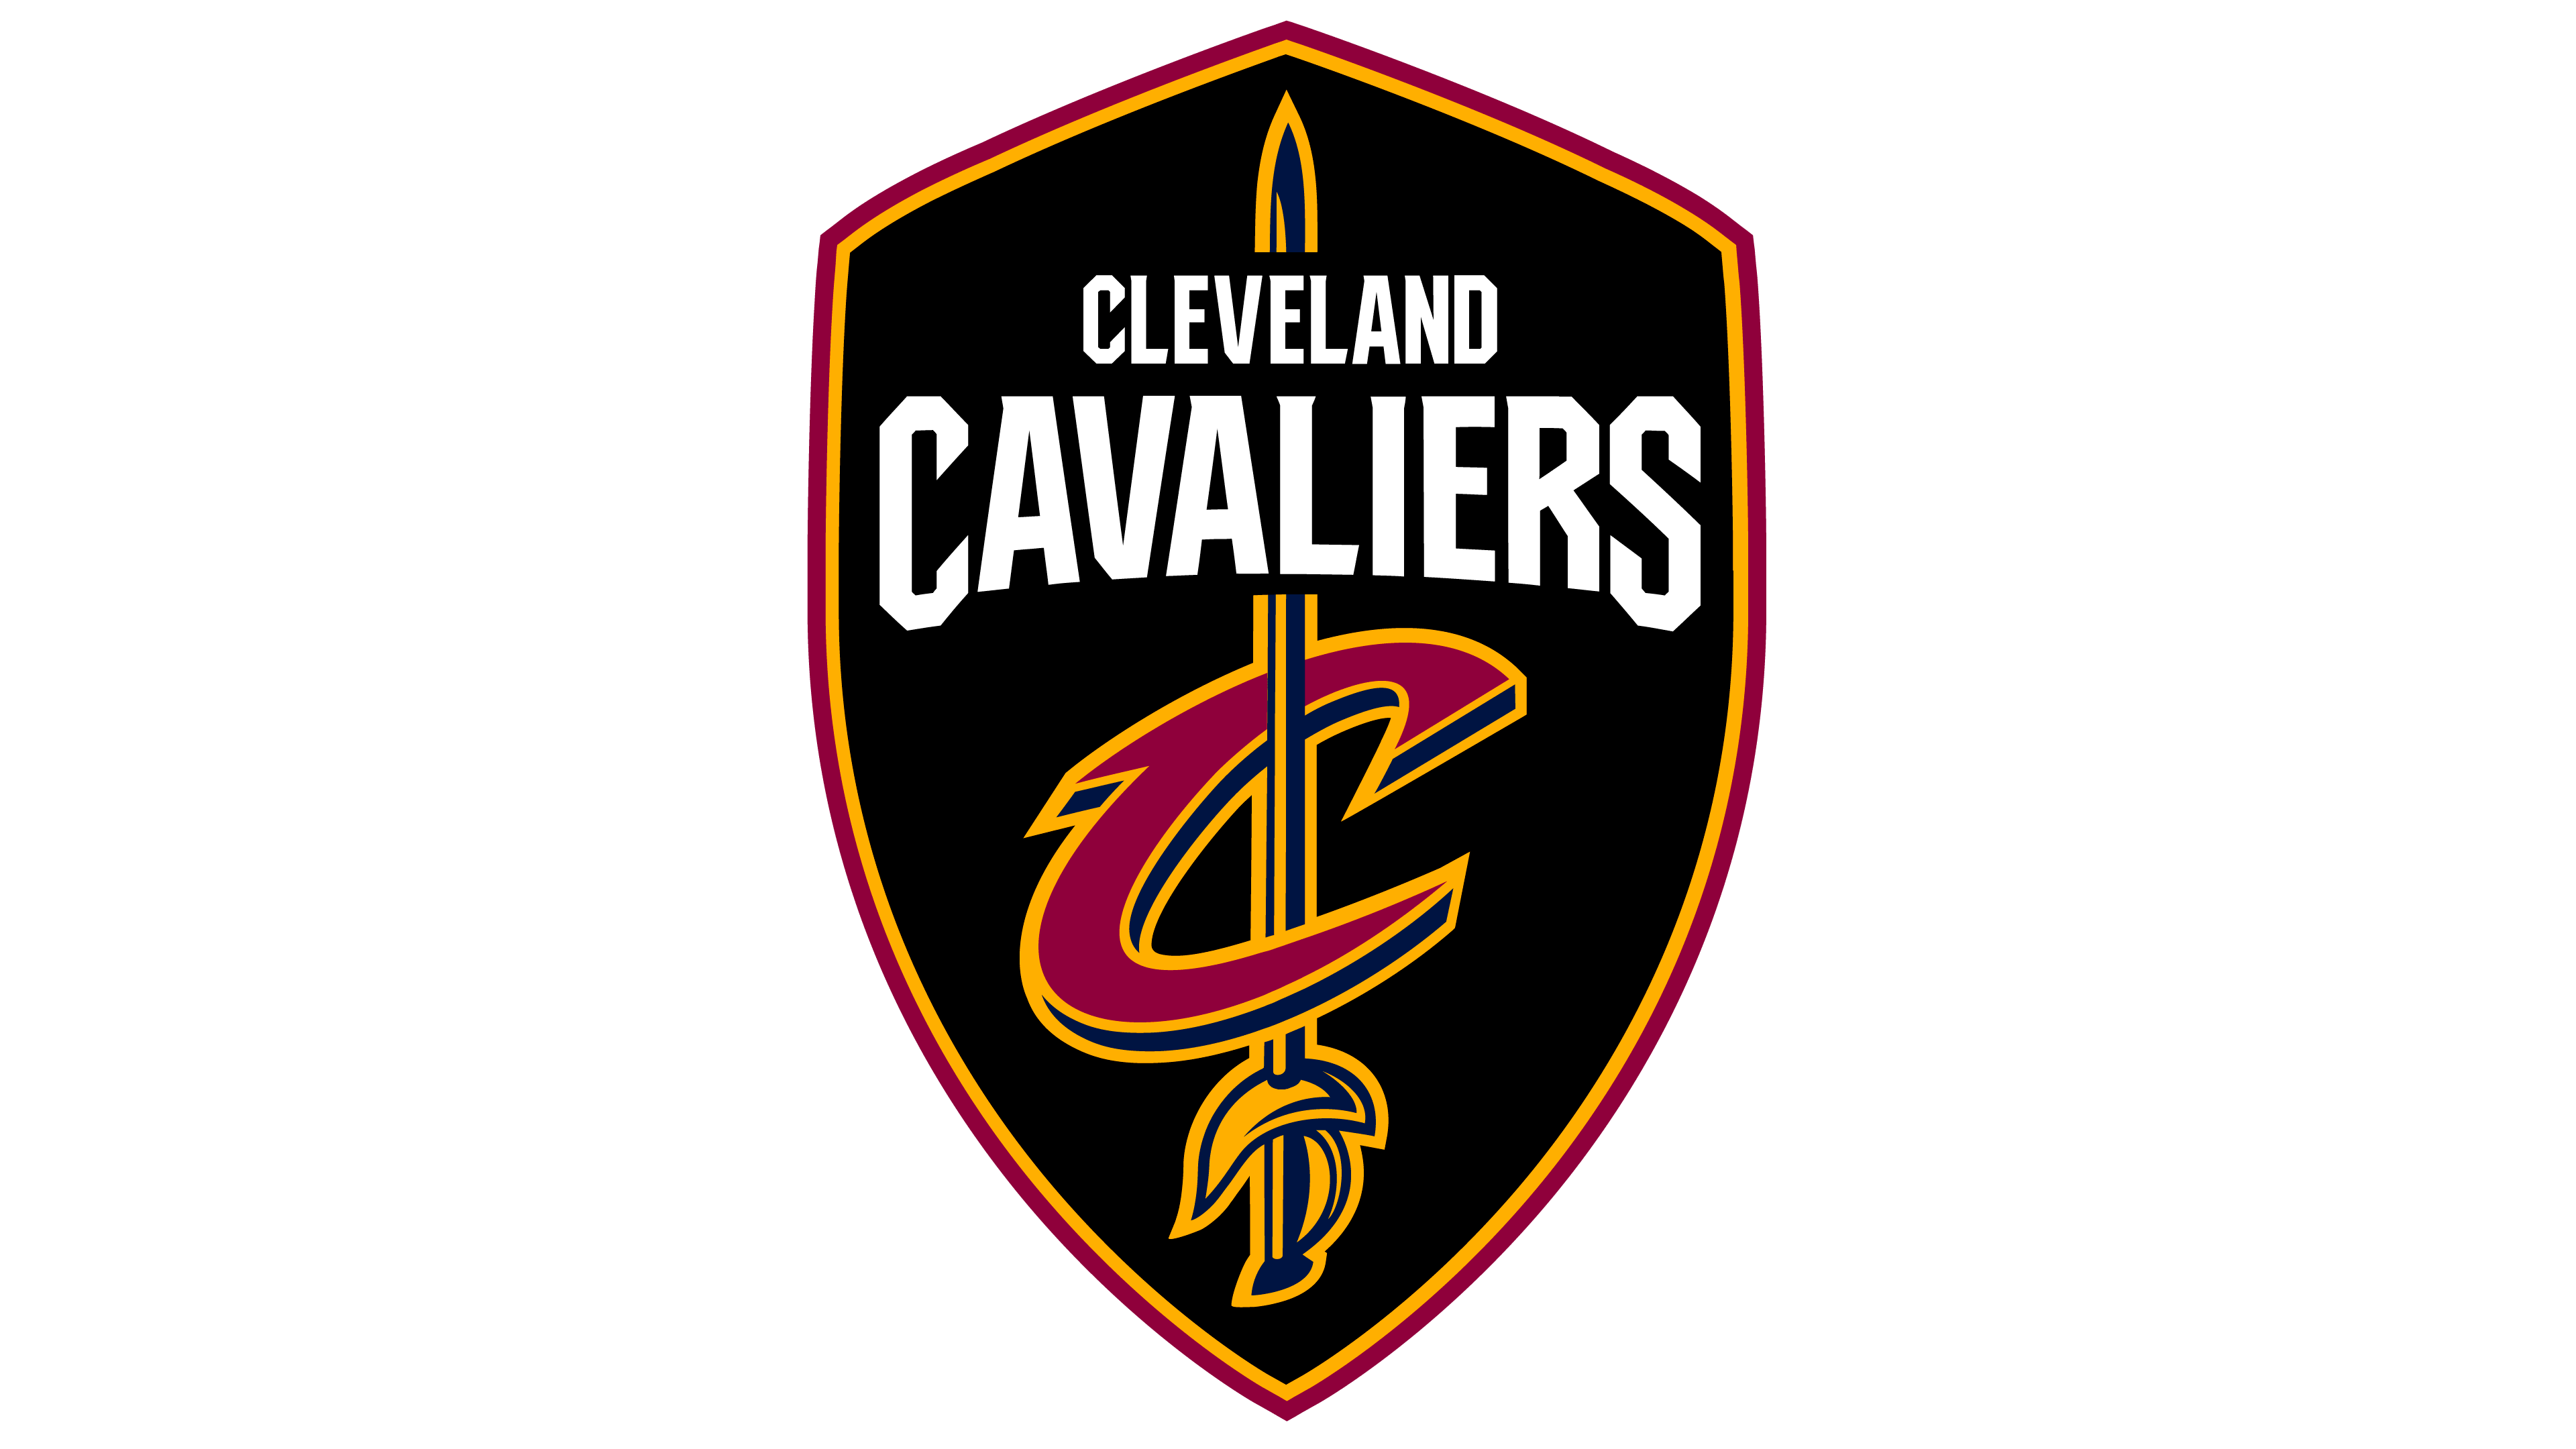 Cleveland Cavaliers Logo histoire, signification de l'emblème